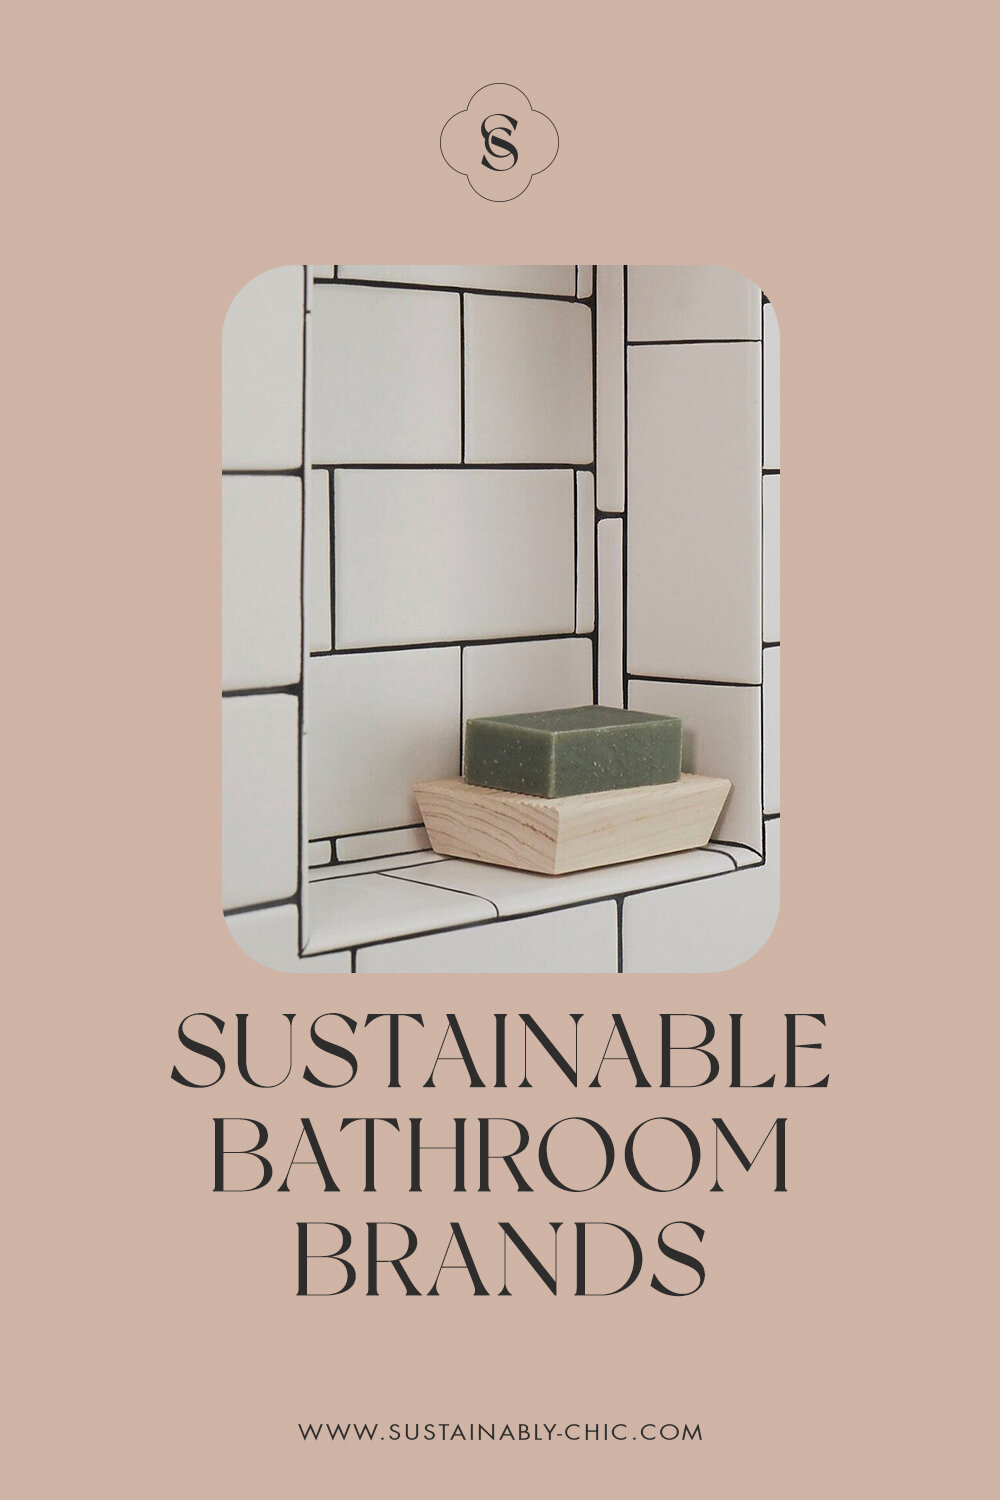 可持续时尚与美容博客|可持续品牌的环保bob网app浴室。jpg